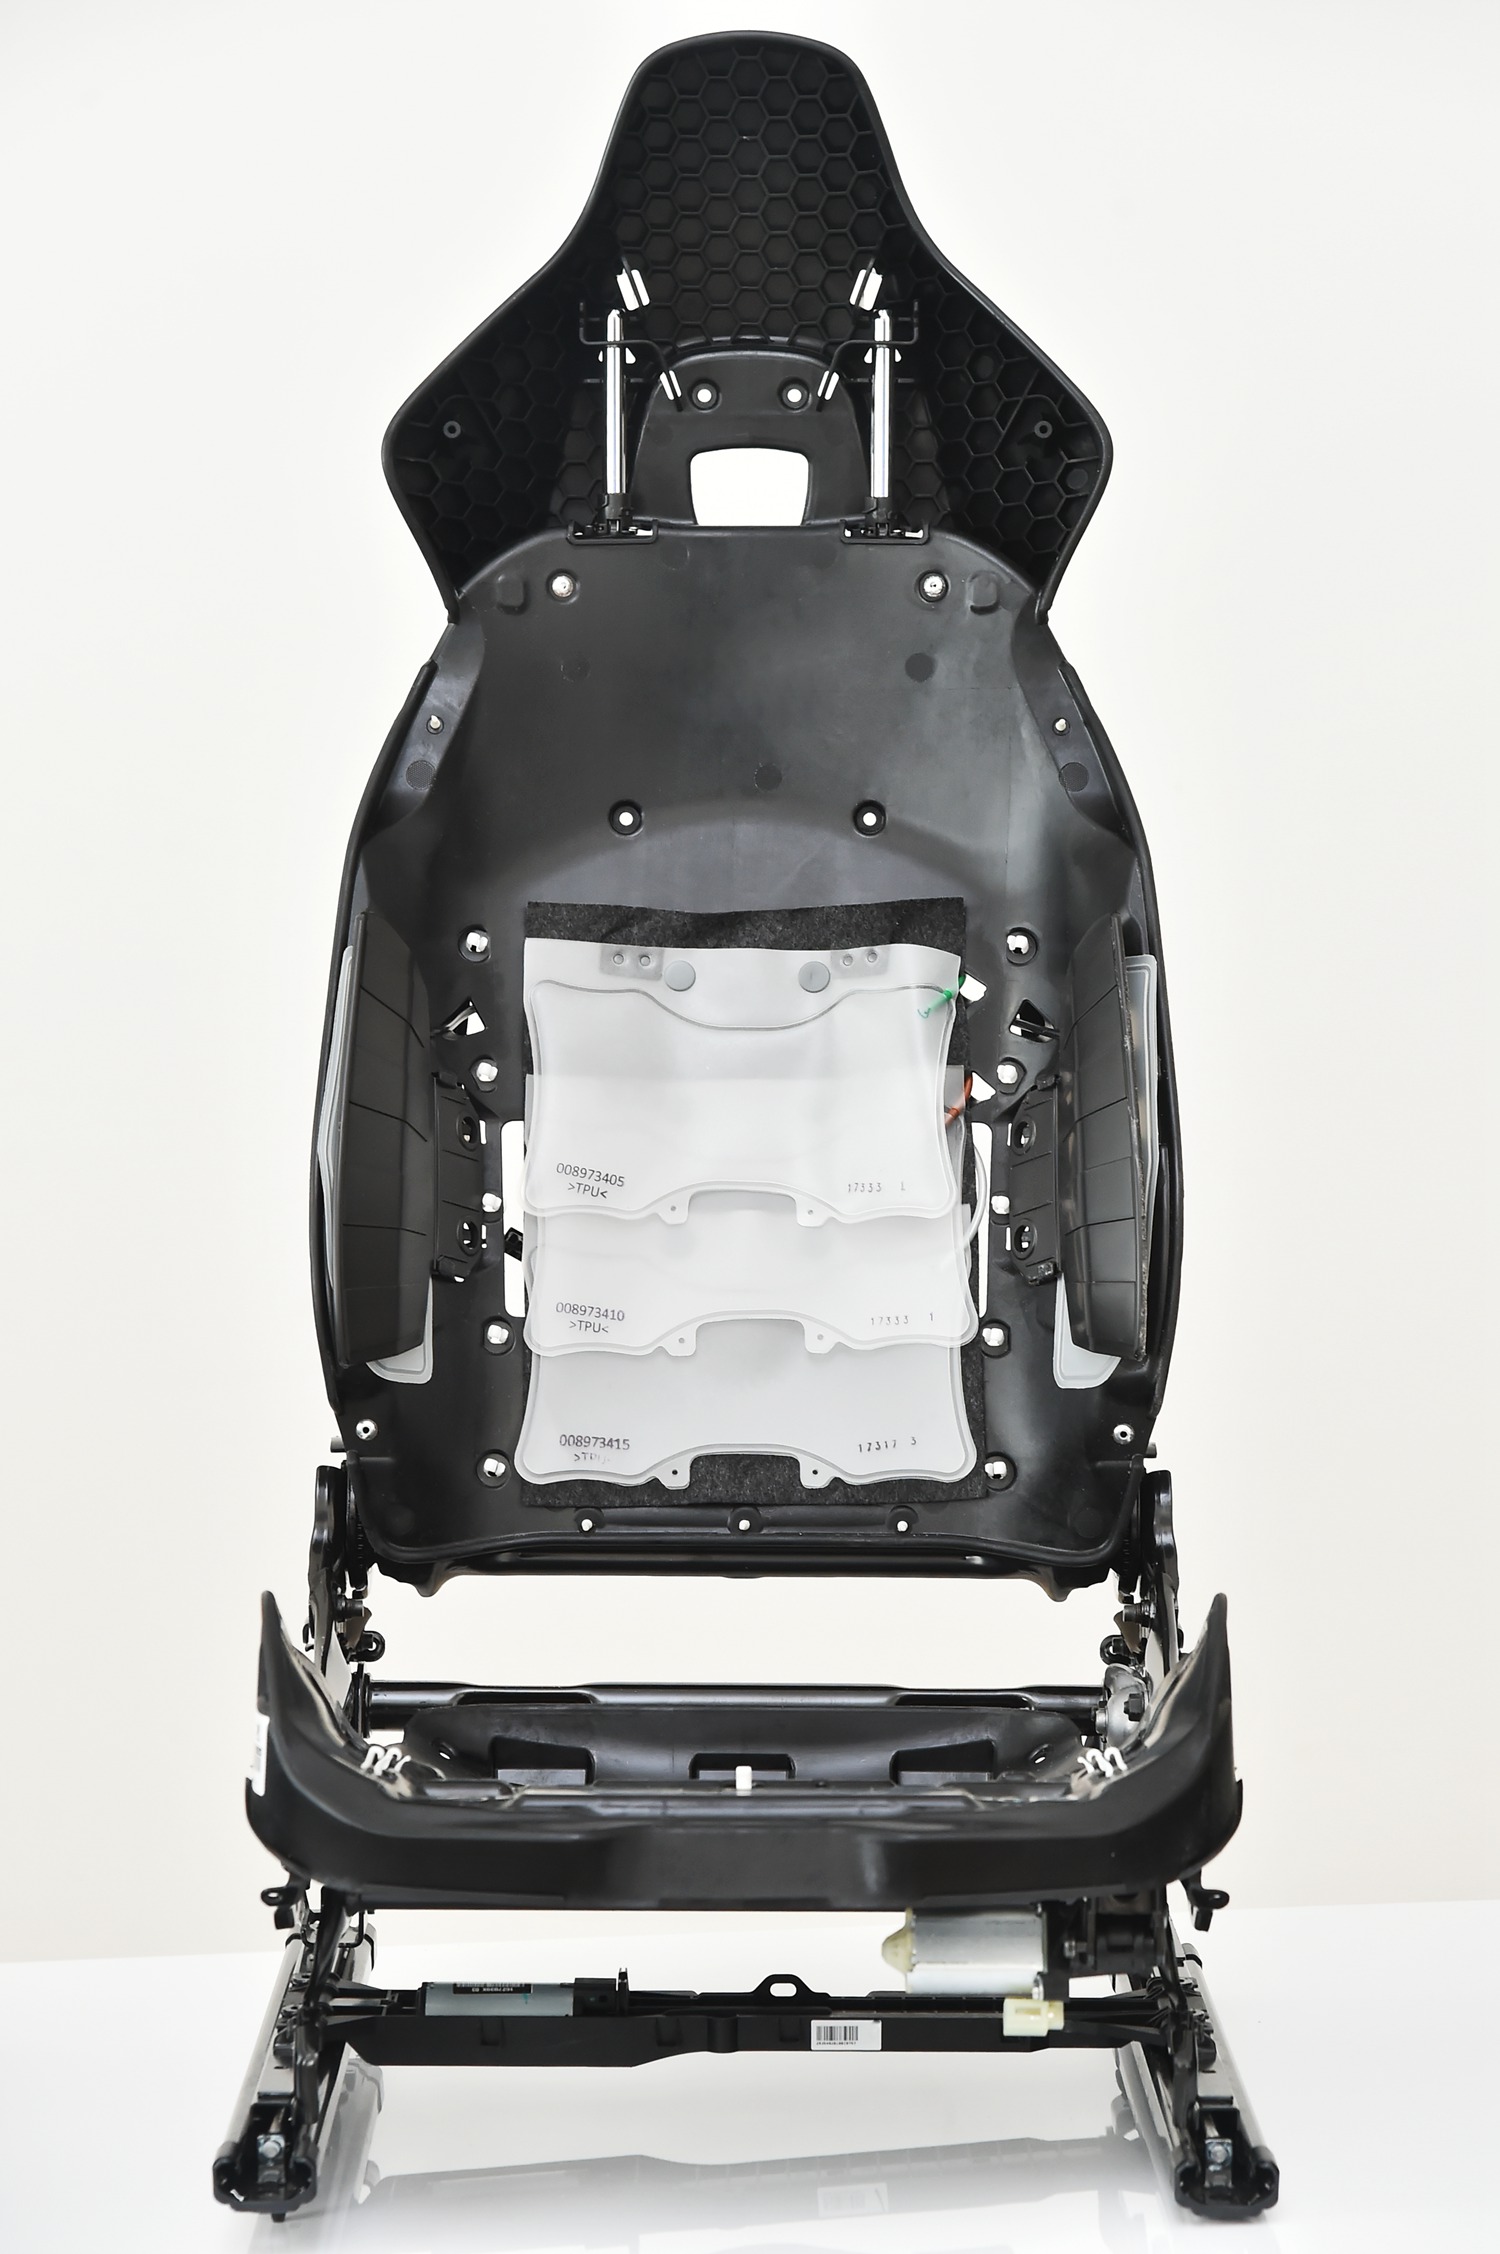 4. 全新座椅骨架使用大量高强度钢及大面积玻璃纤维-2